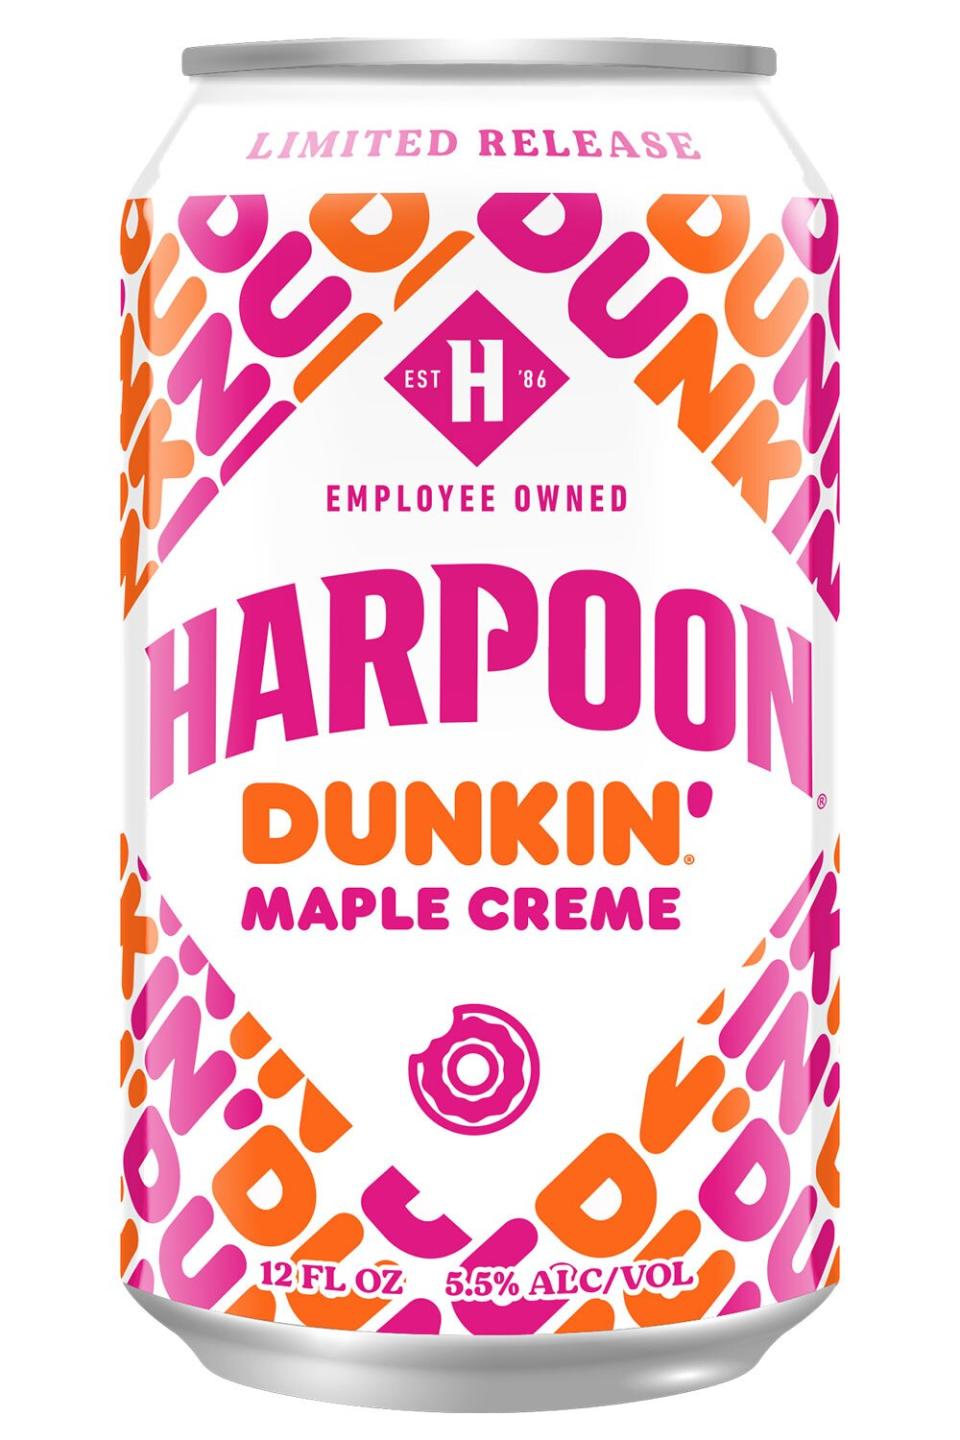 Dunkin' Harpoon flavors